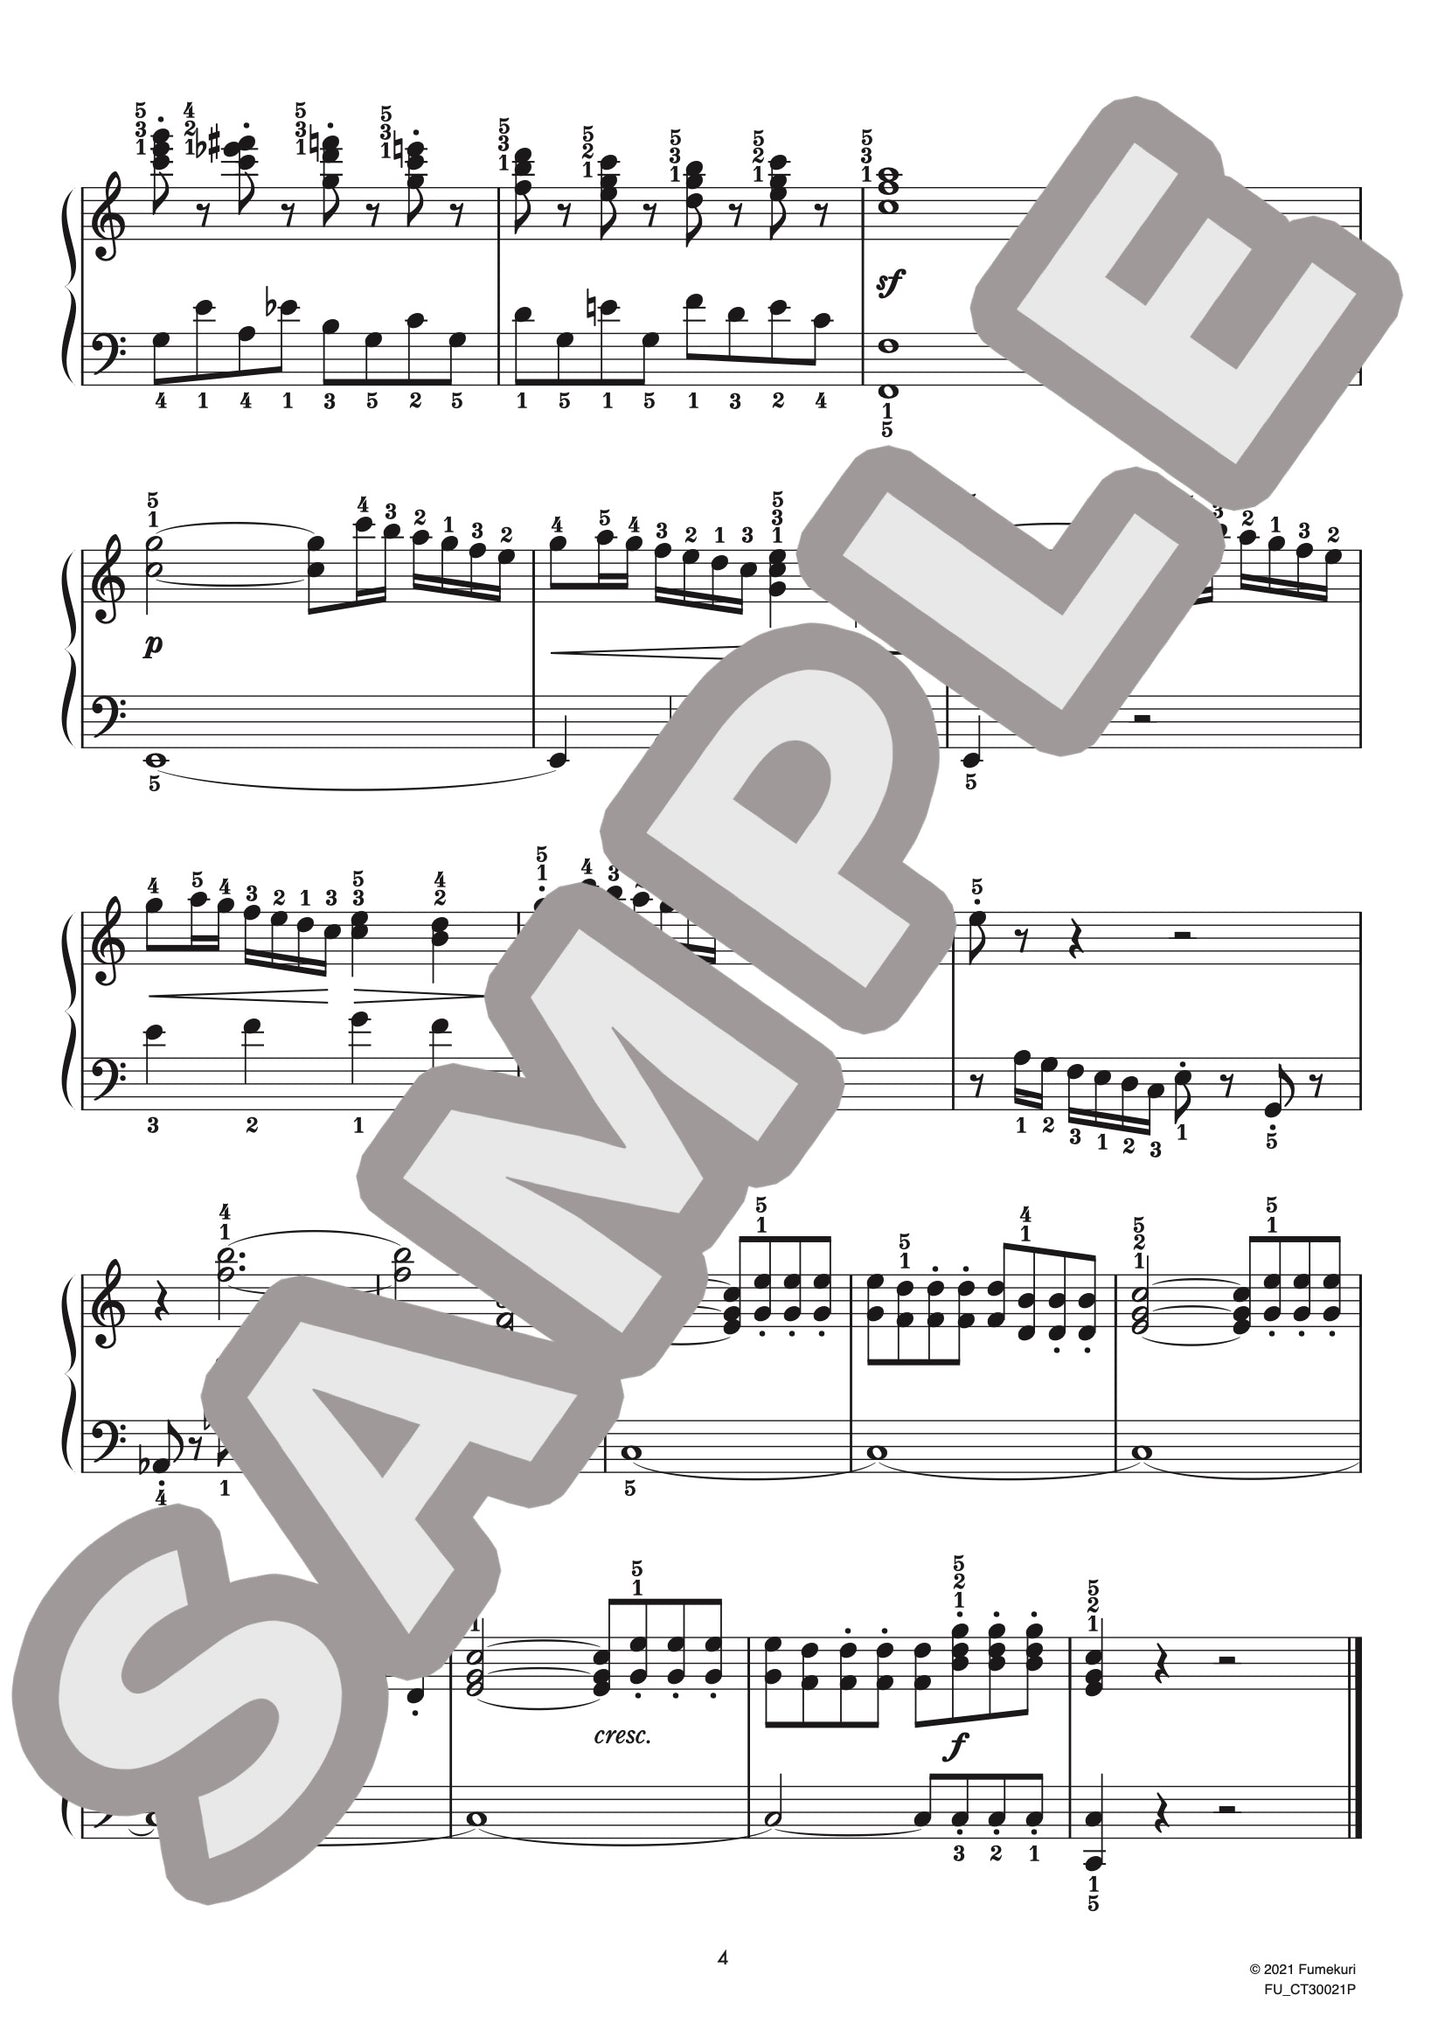 ピアノ協奏曲 第4番 第1楽章（ルートヴィヒ・ヴァン・ベートーヴェン) / クラシック・オリジナル楽曲【初中級】